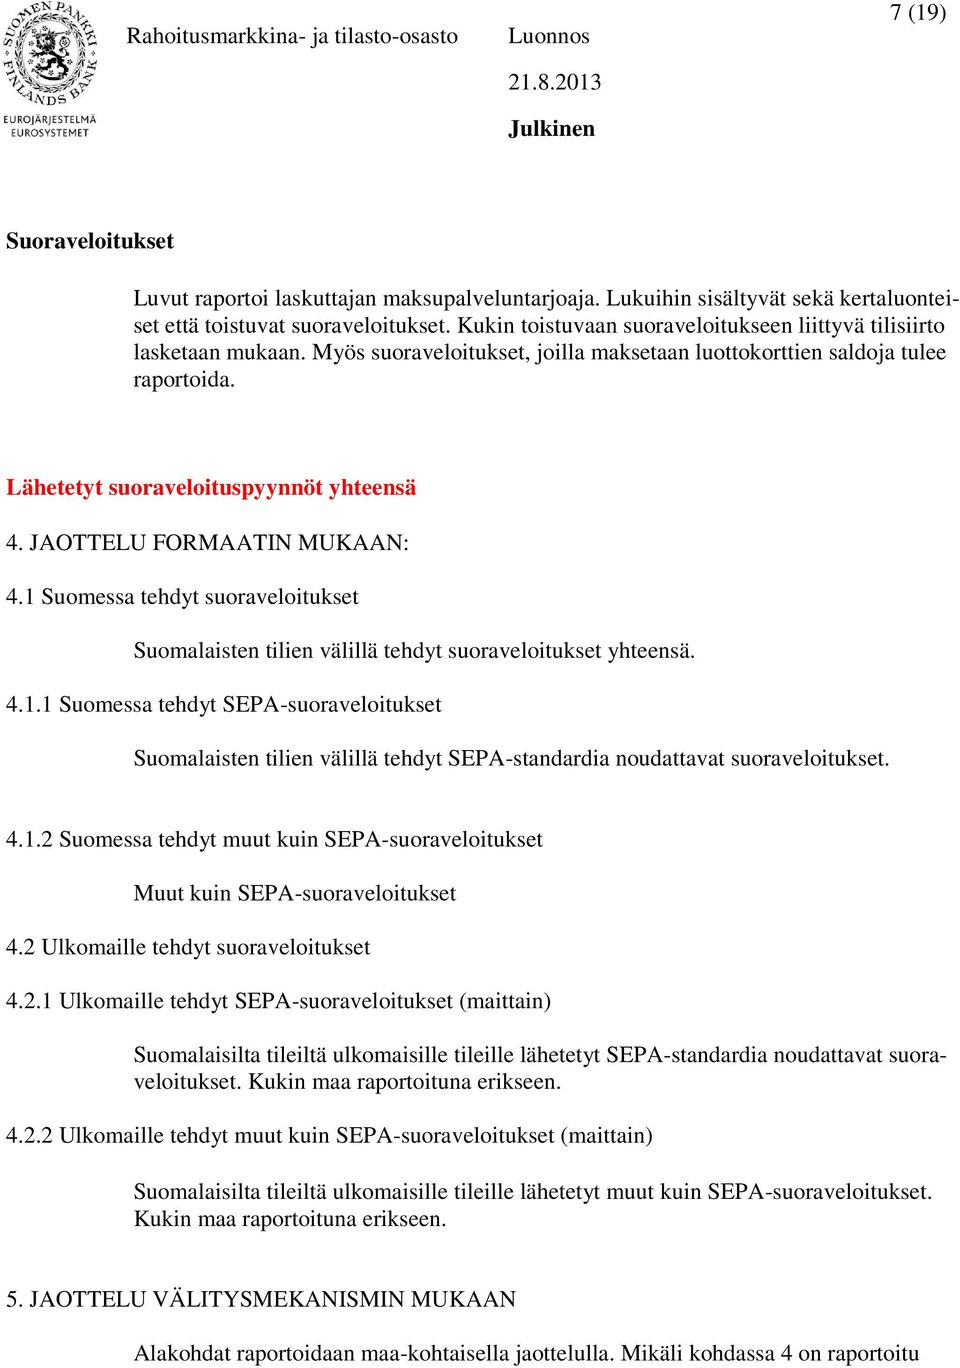 JAOTTELU FORMAATIN MUKAAN: 4.1 Suomessa tehdyt suoraveloitukset Suomalaisten tilien välillä tehdyt suoraveloitukset yhteensä. 4.1.1 Suomessa tehdyt SEPA-suoraveloitukset Suomalaisten tilien välillä tehdyt SEPA-standardia noudattavat suoraveloitukset.